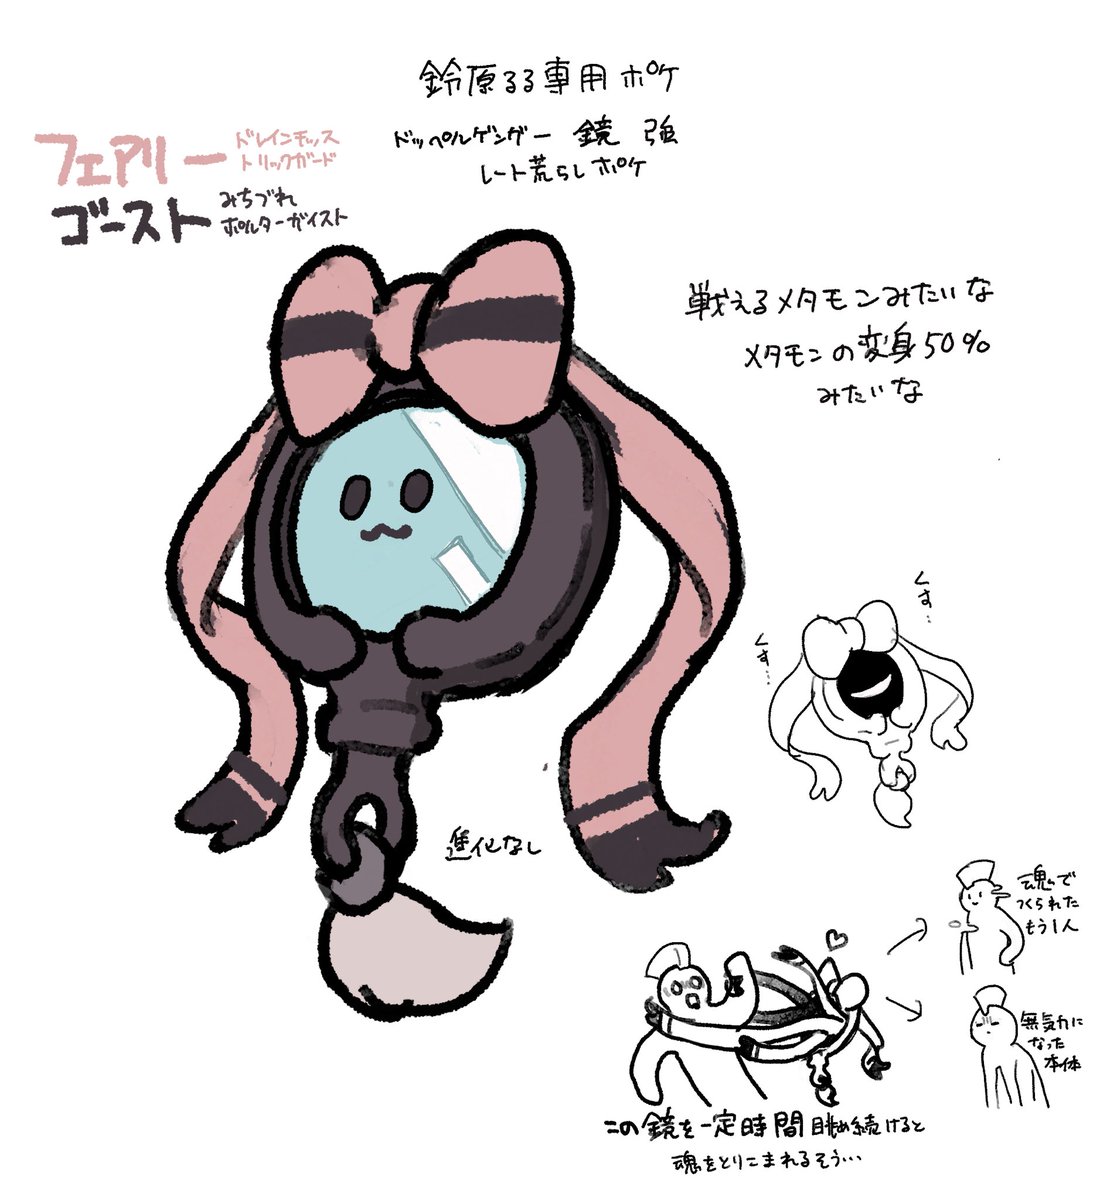 suzuhara lulu 1girl pink cardigan pokemon (creature) hat skirt bow blue eyes  illustration images